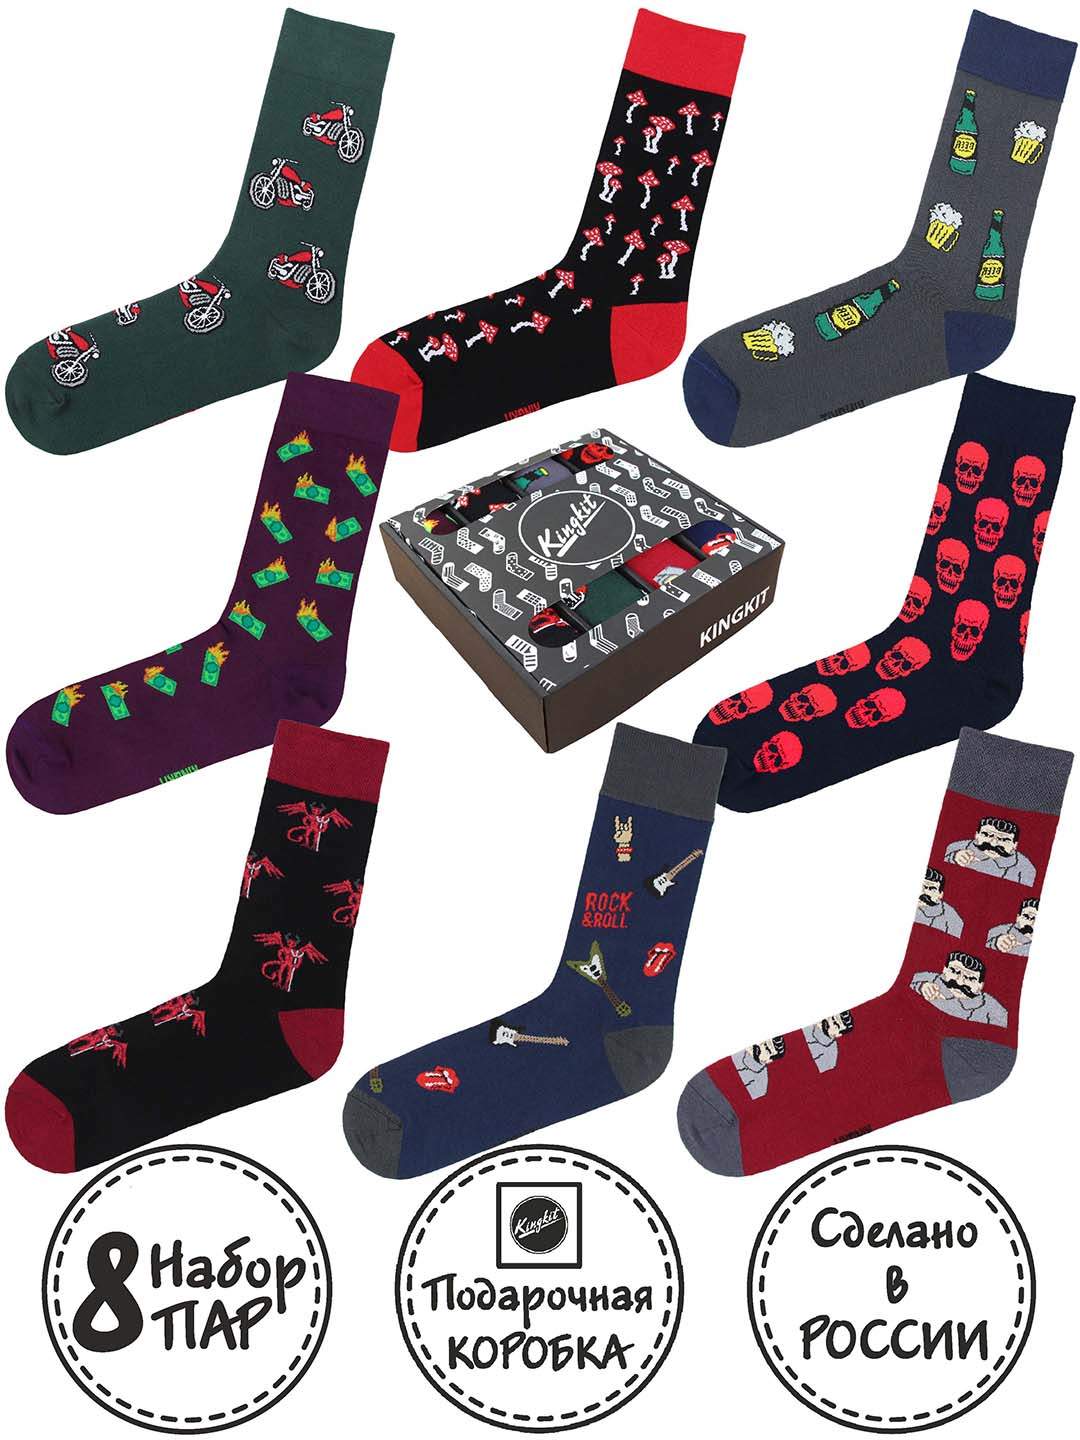 Подарочный набор носков унисекс Kingkit 8006 разноцветных 36-41, 8 пар